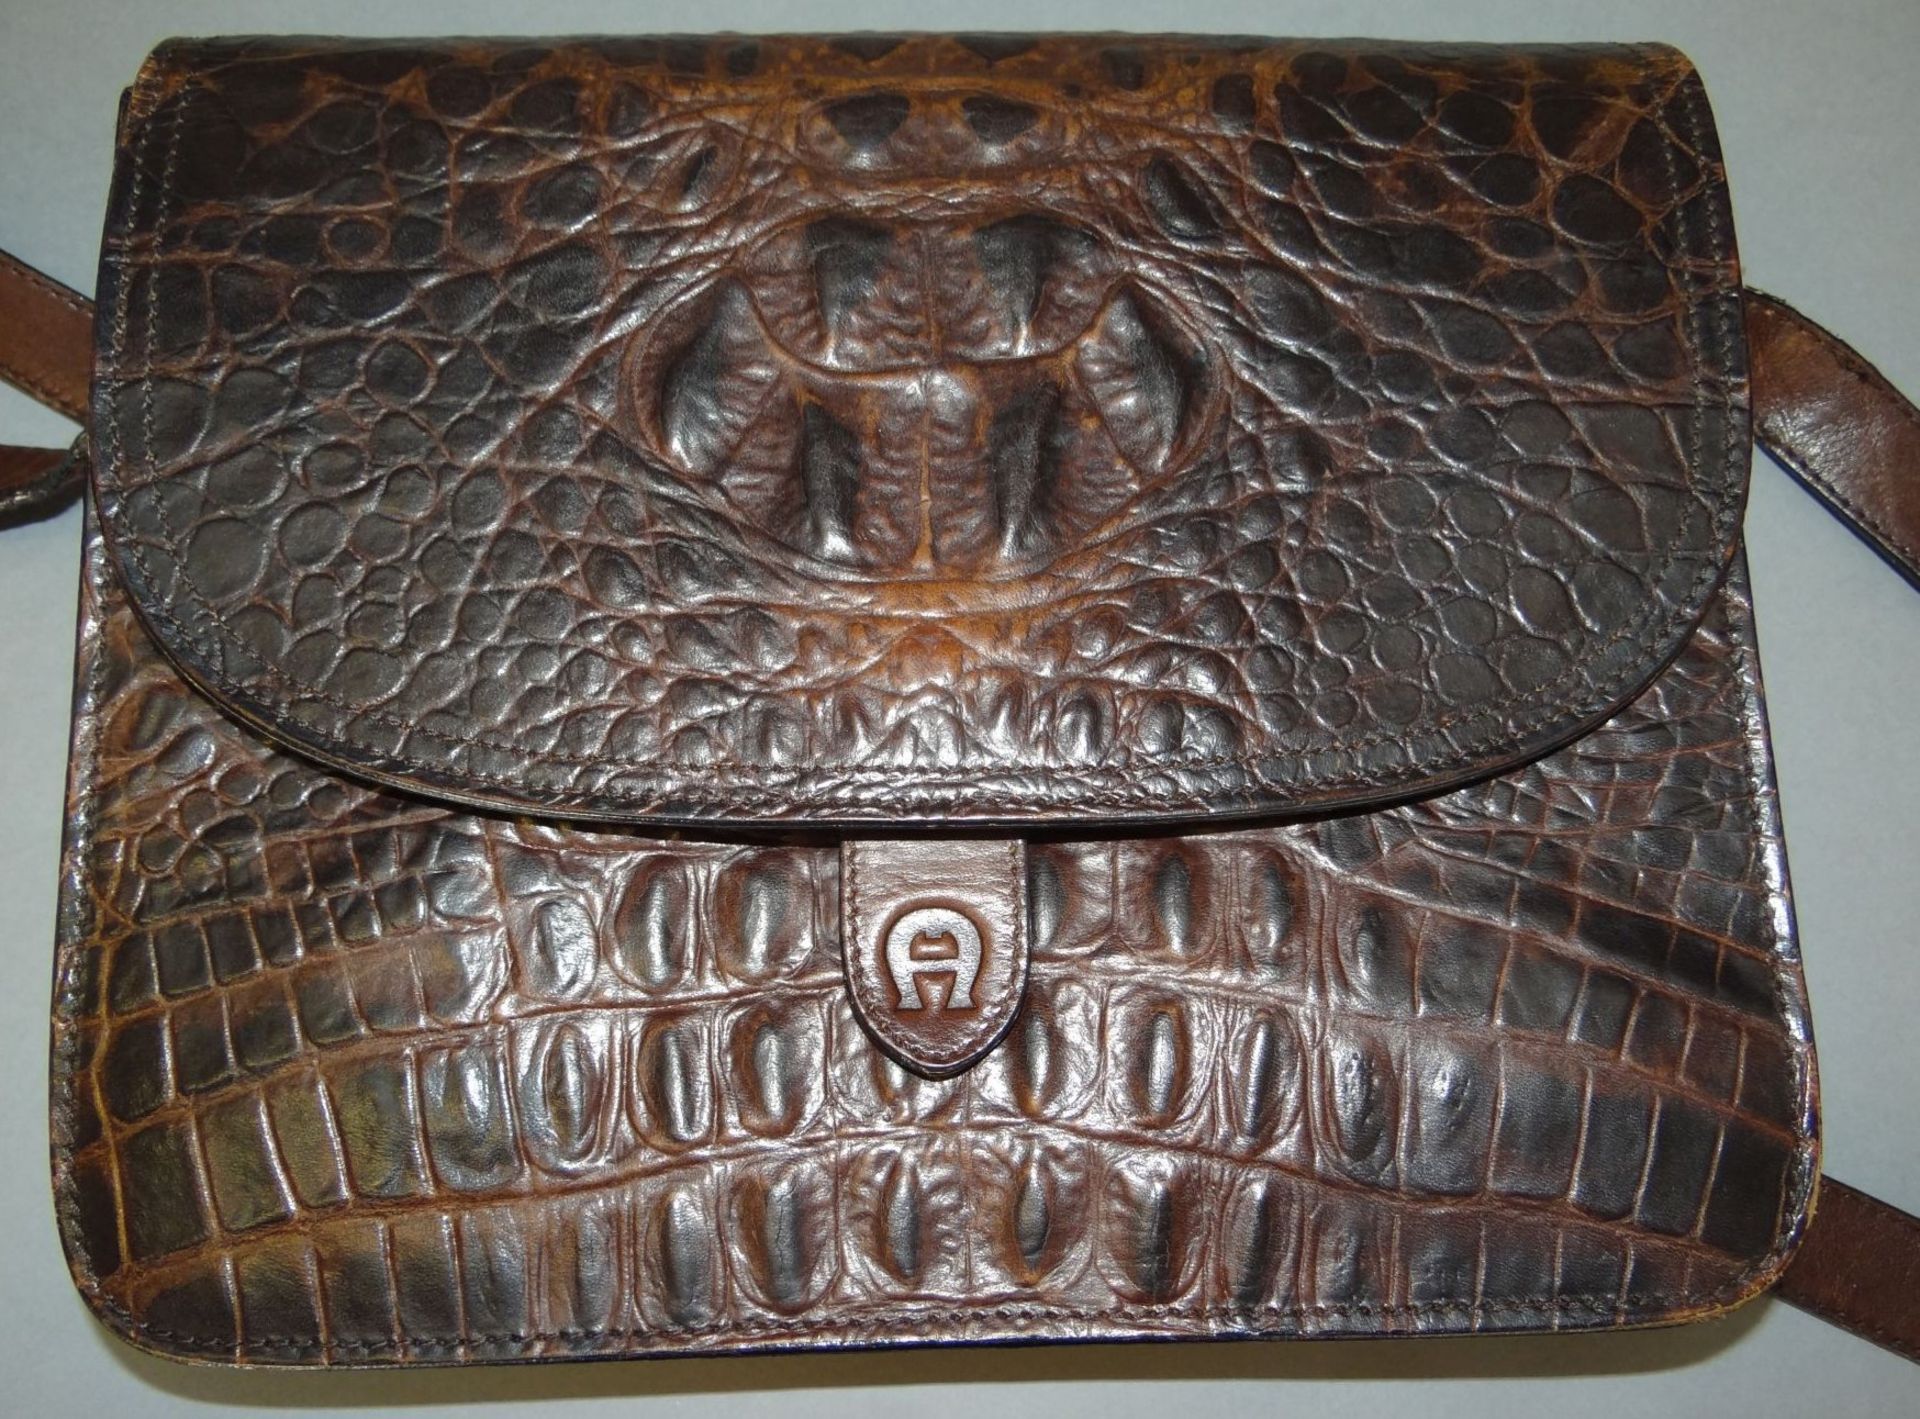 Handtasche "Aigner" Krokoleder-Dekor, neuwertig, 21x24 cm - Bild 5 aus 5